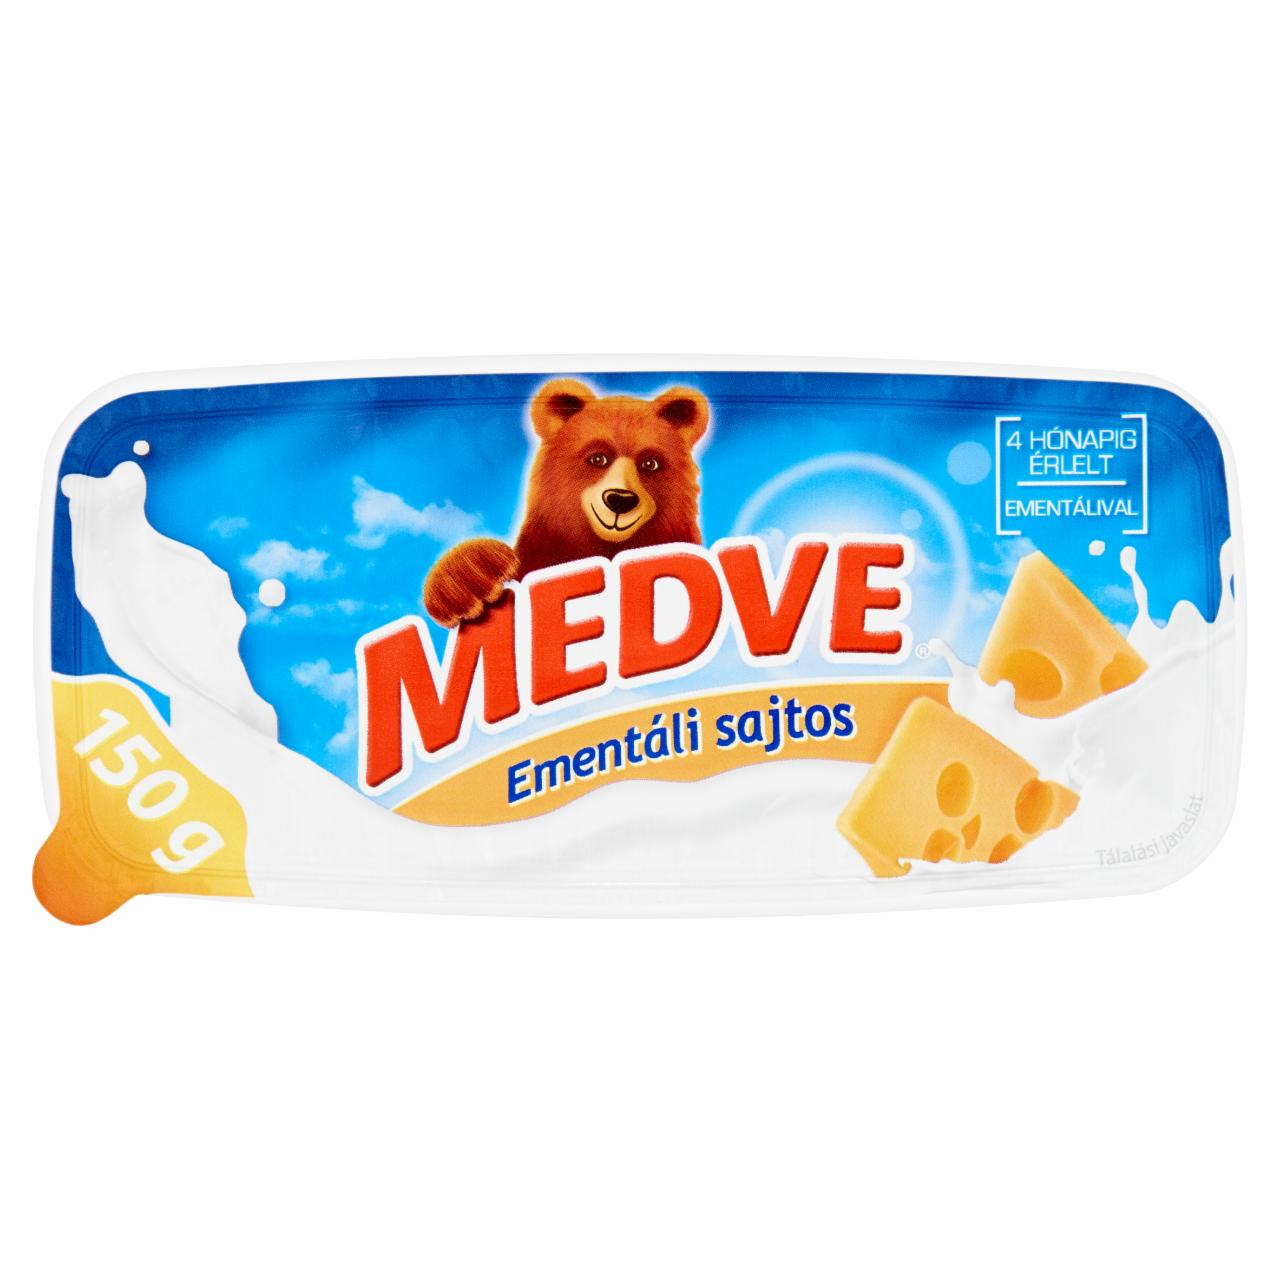 Képek - Medve ementáli sajtos szendvicskrém 150 g